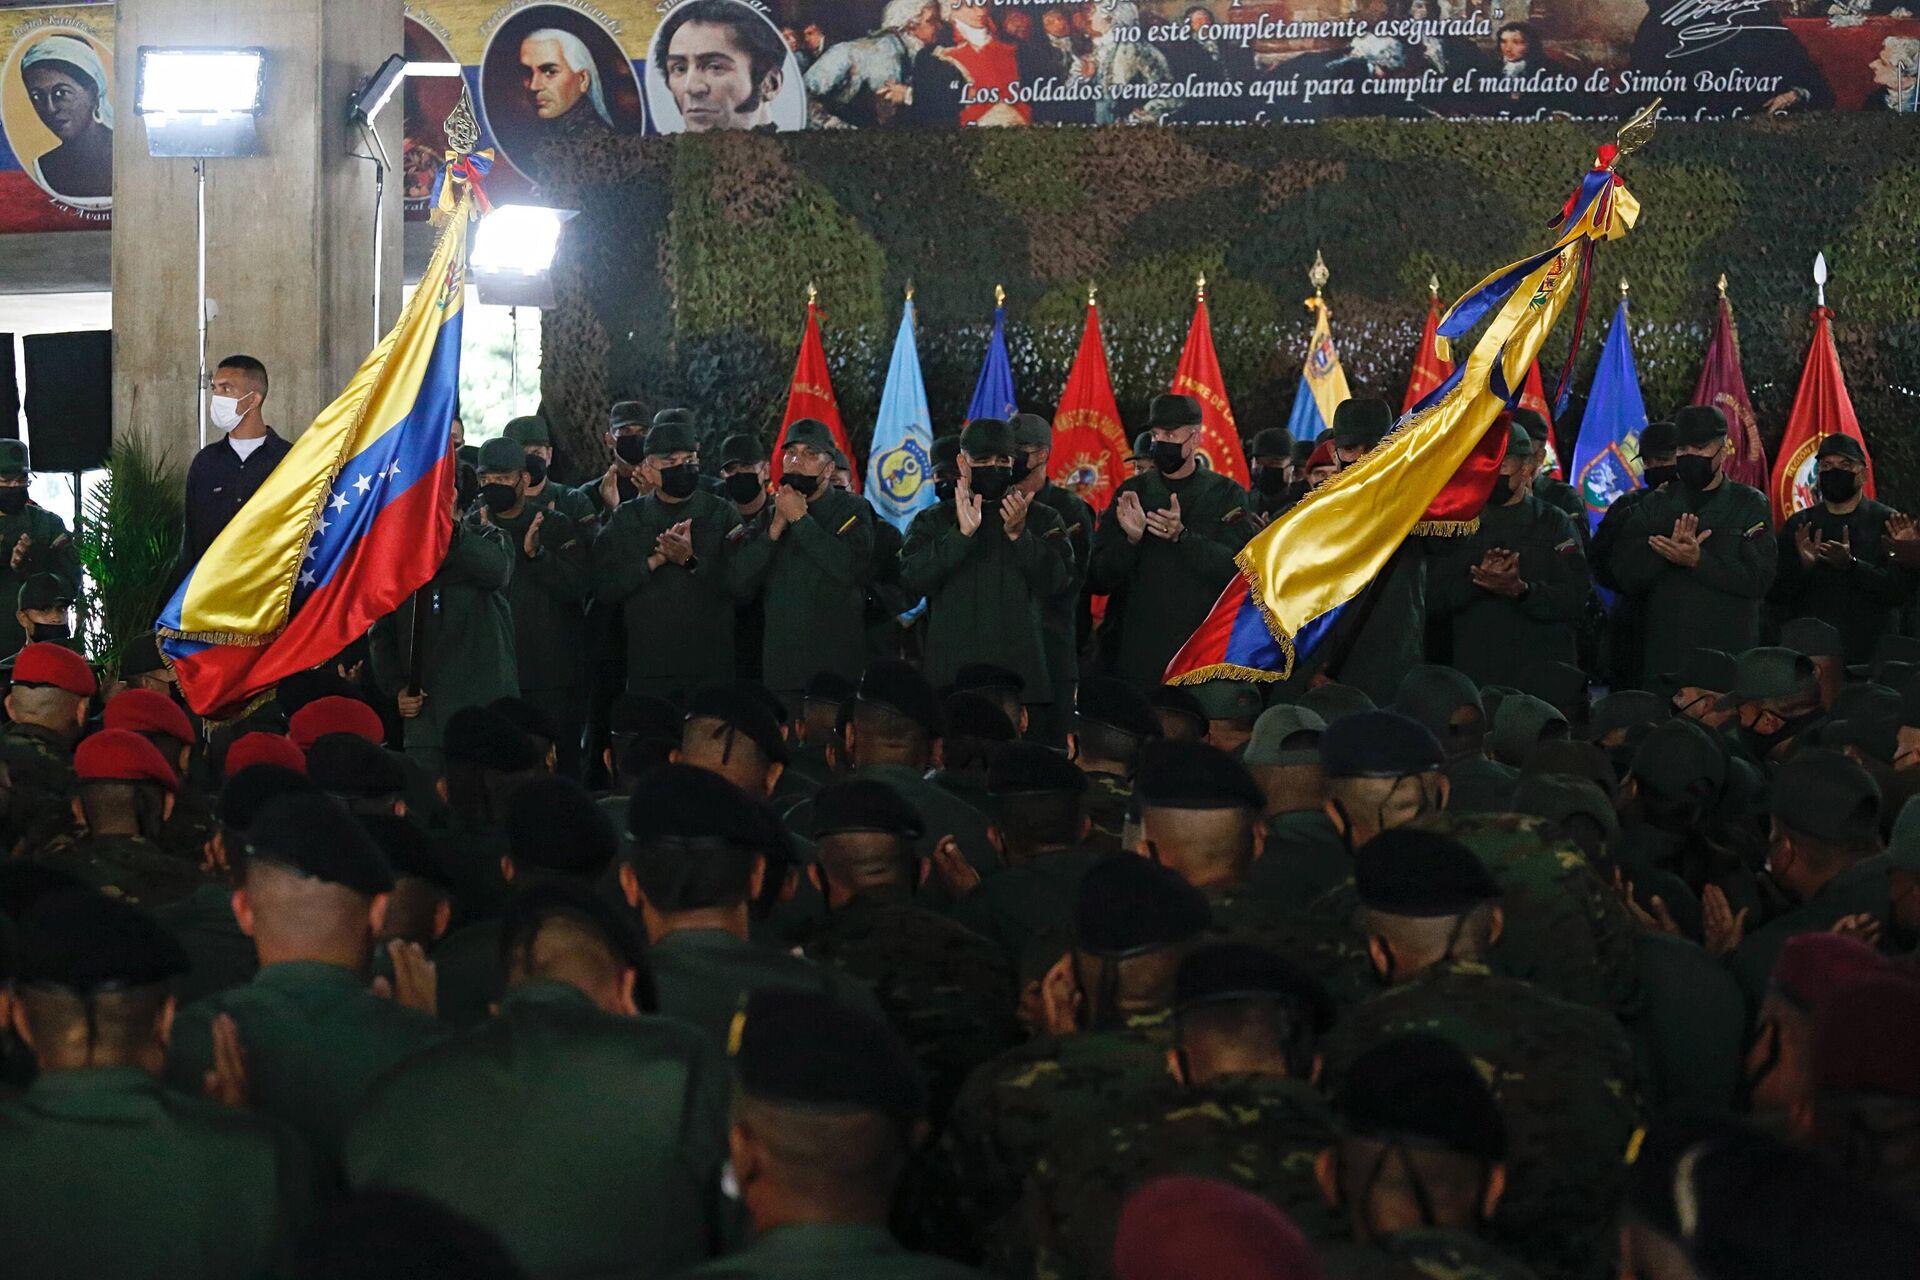 Acto de embanderamiento de la delegación militar venezolana que participará de los Army Games 2022 - Sputnik Mundo, 1920, 21.07.2022